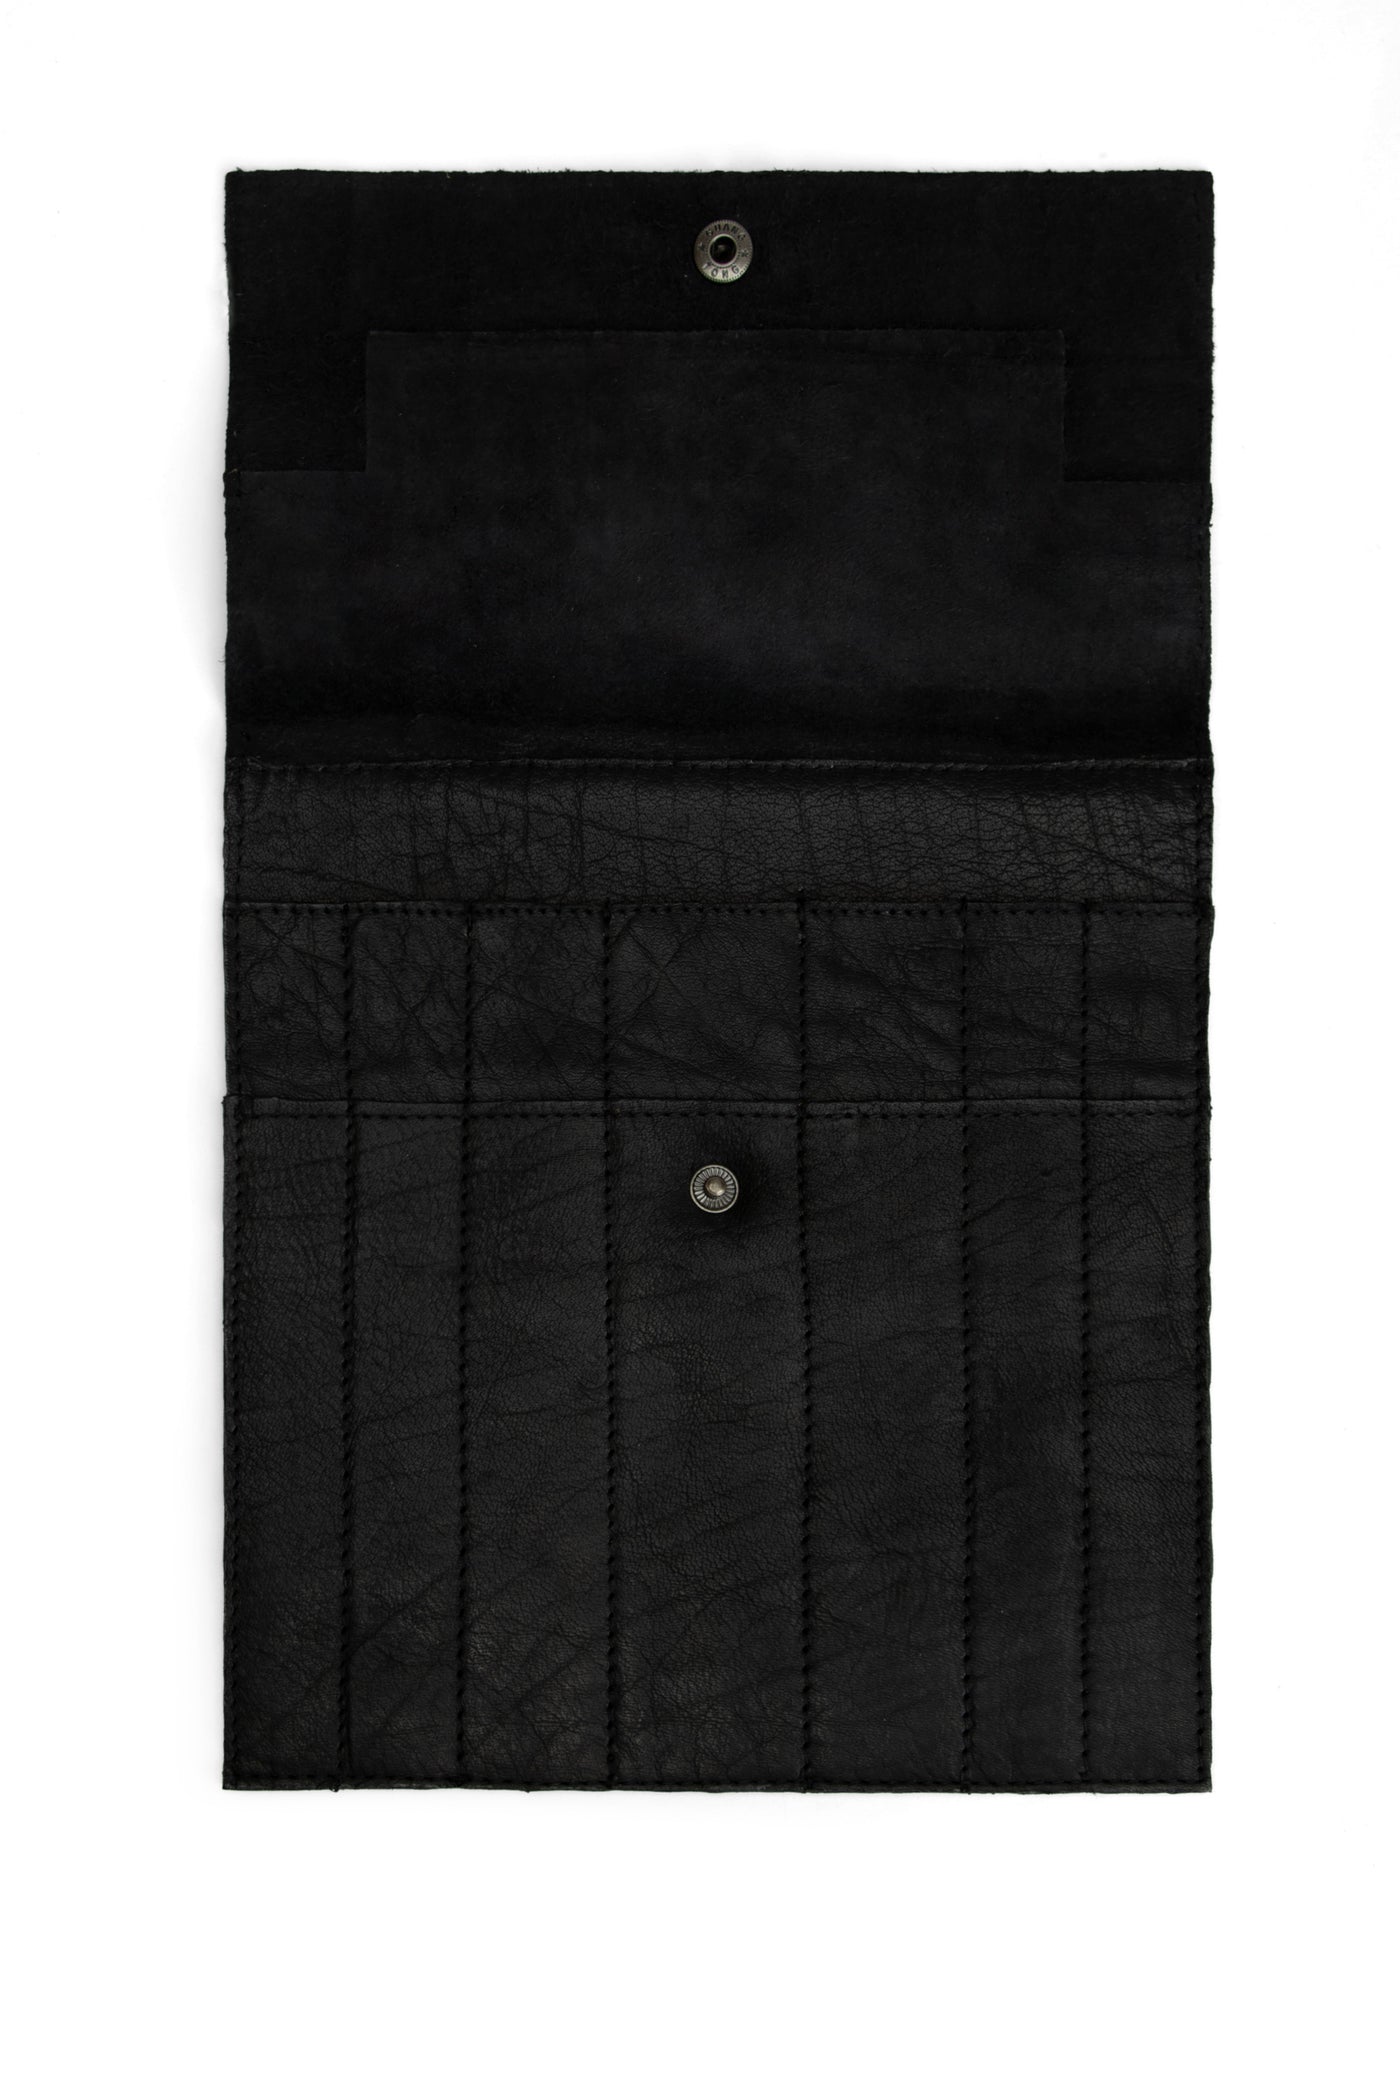 muud Oslo Etui knit Black